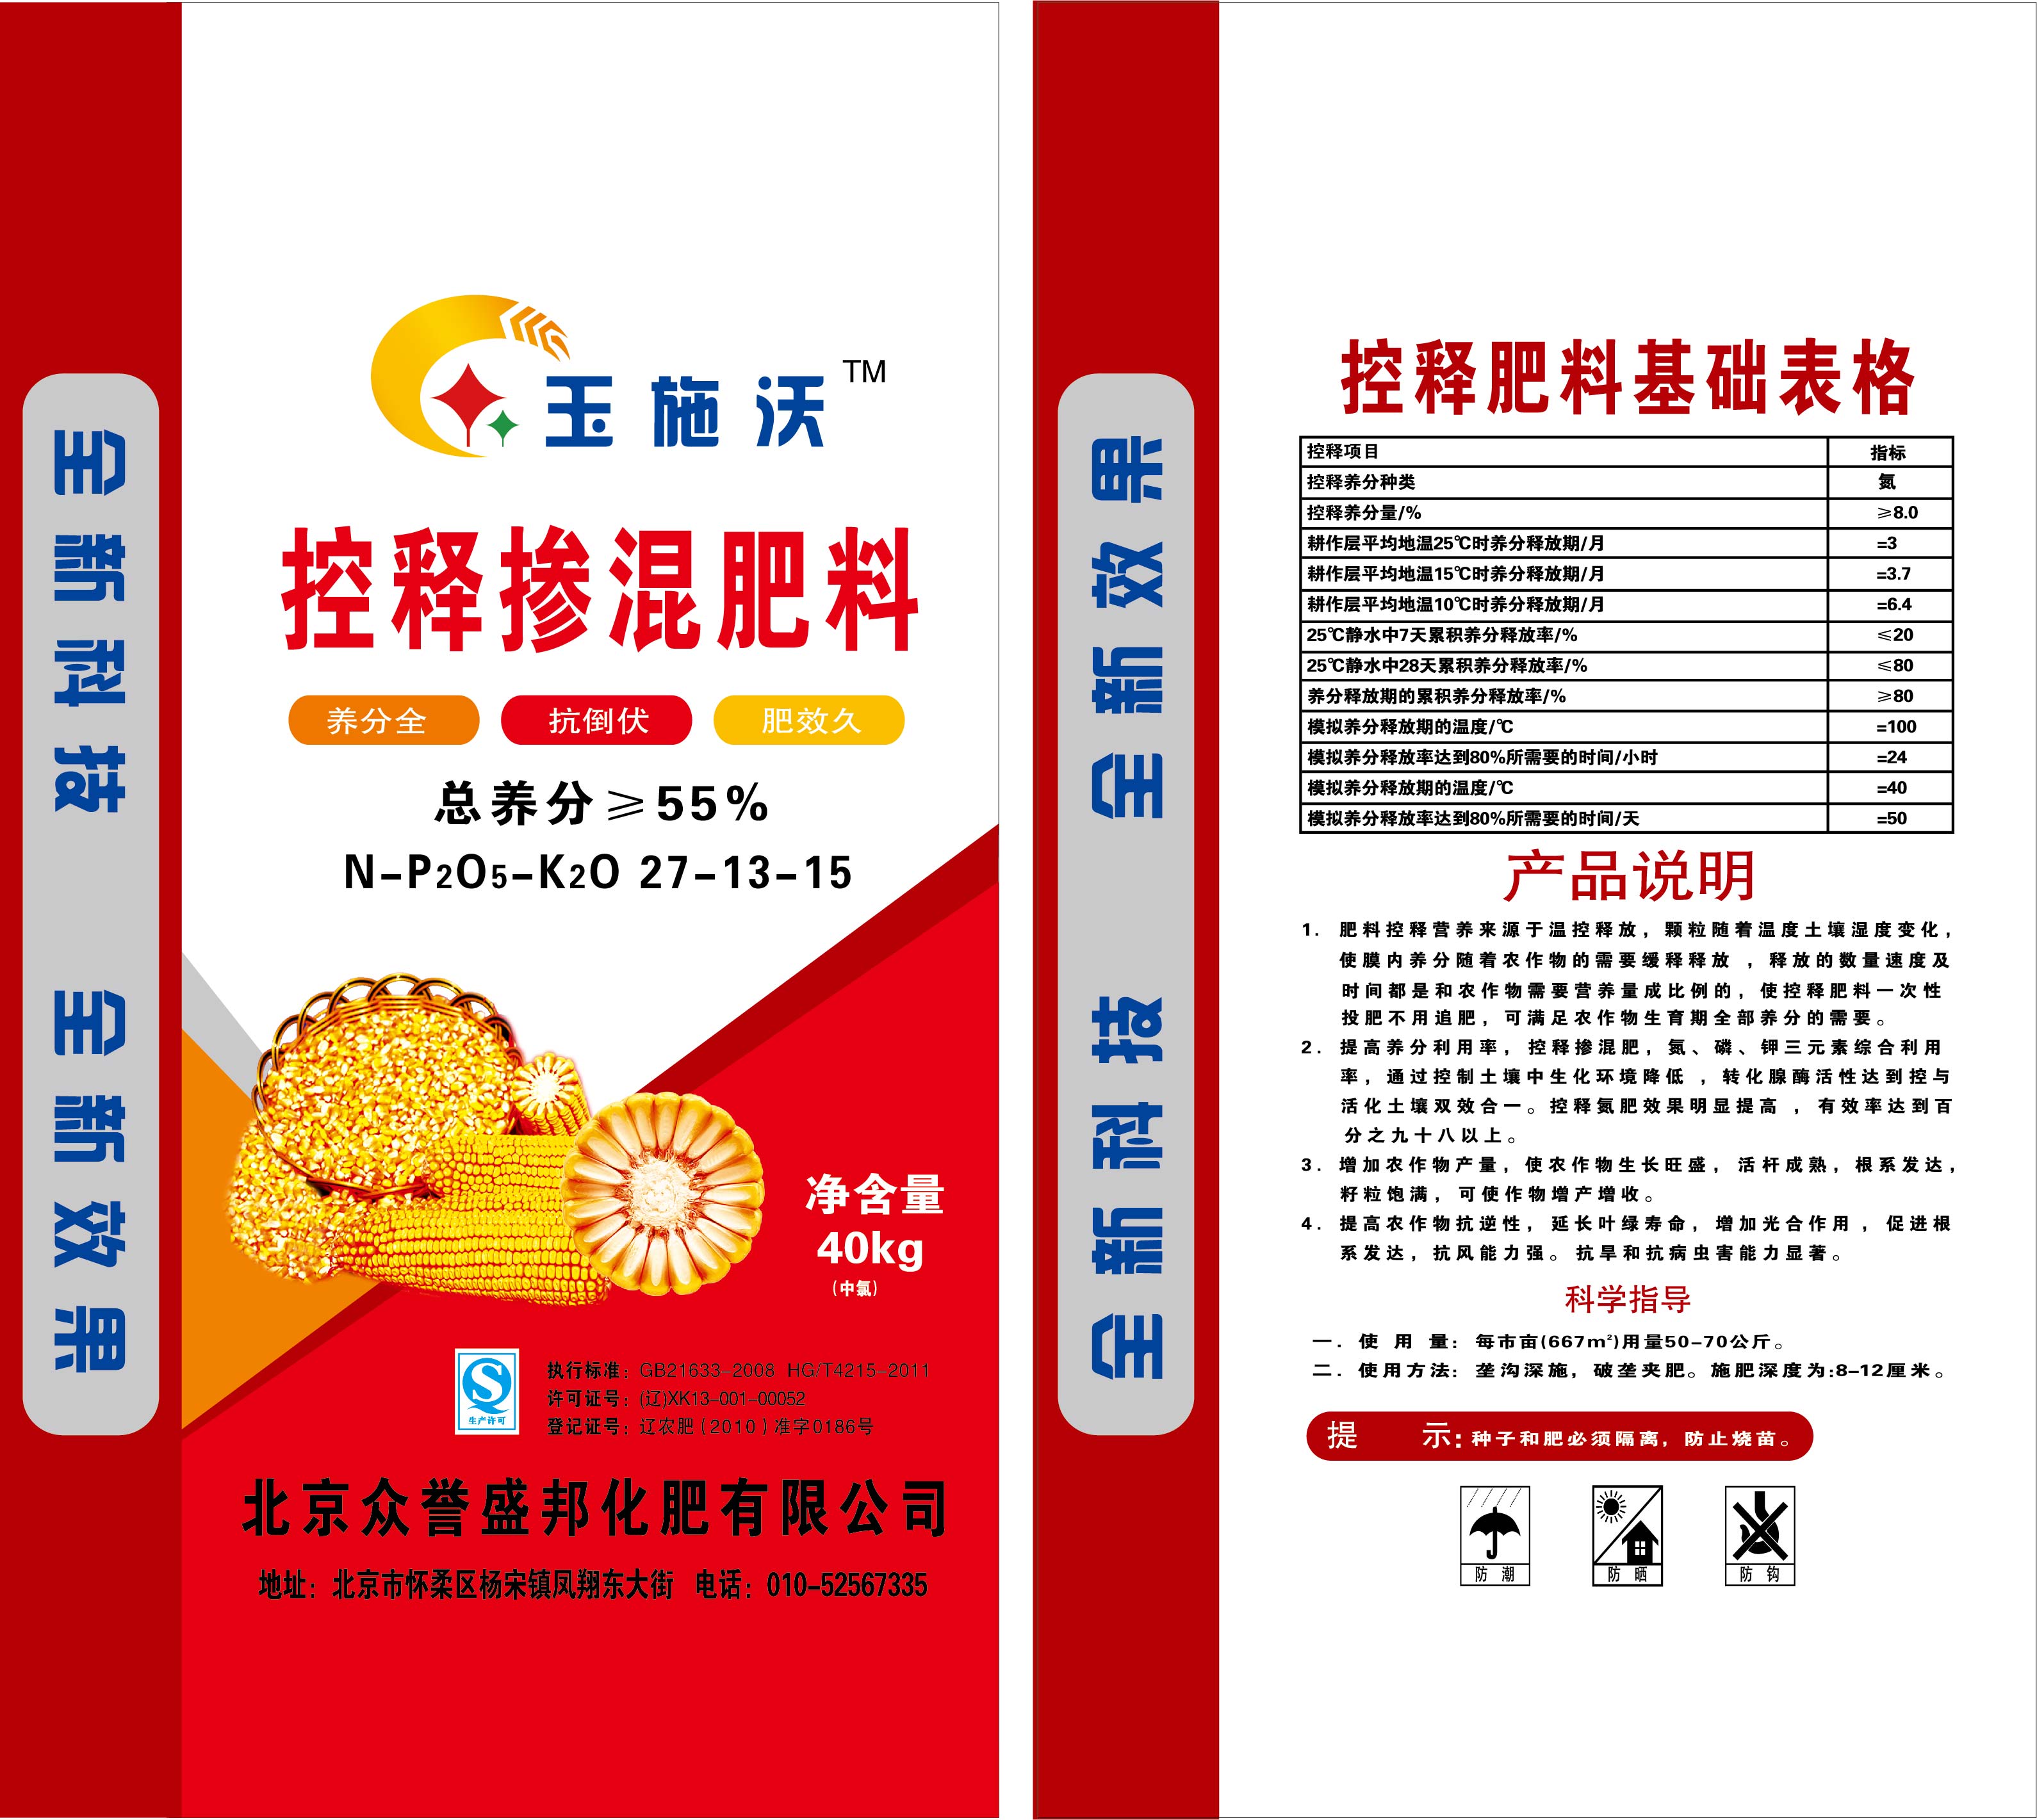 玉施沃控释掺混肥料总养分55%控释40kg 北京众誉盛邦化肥有限公司